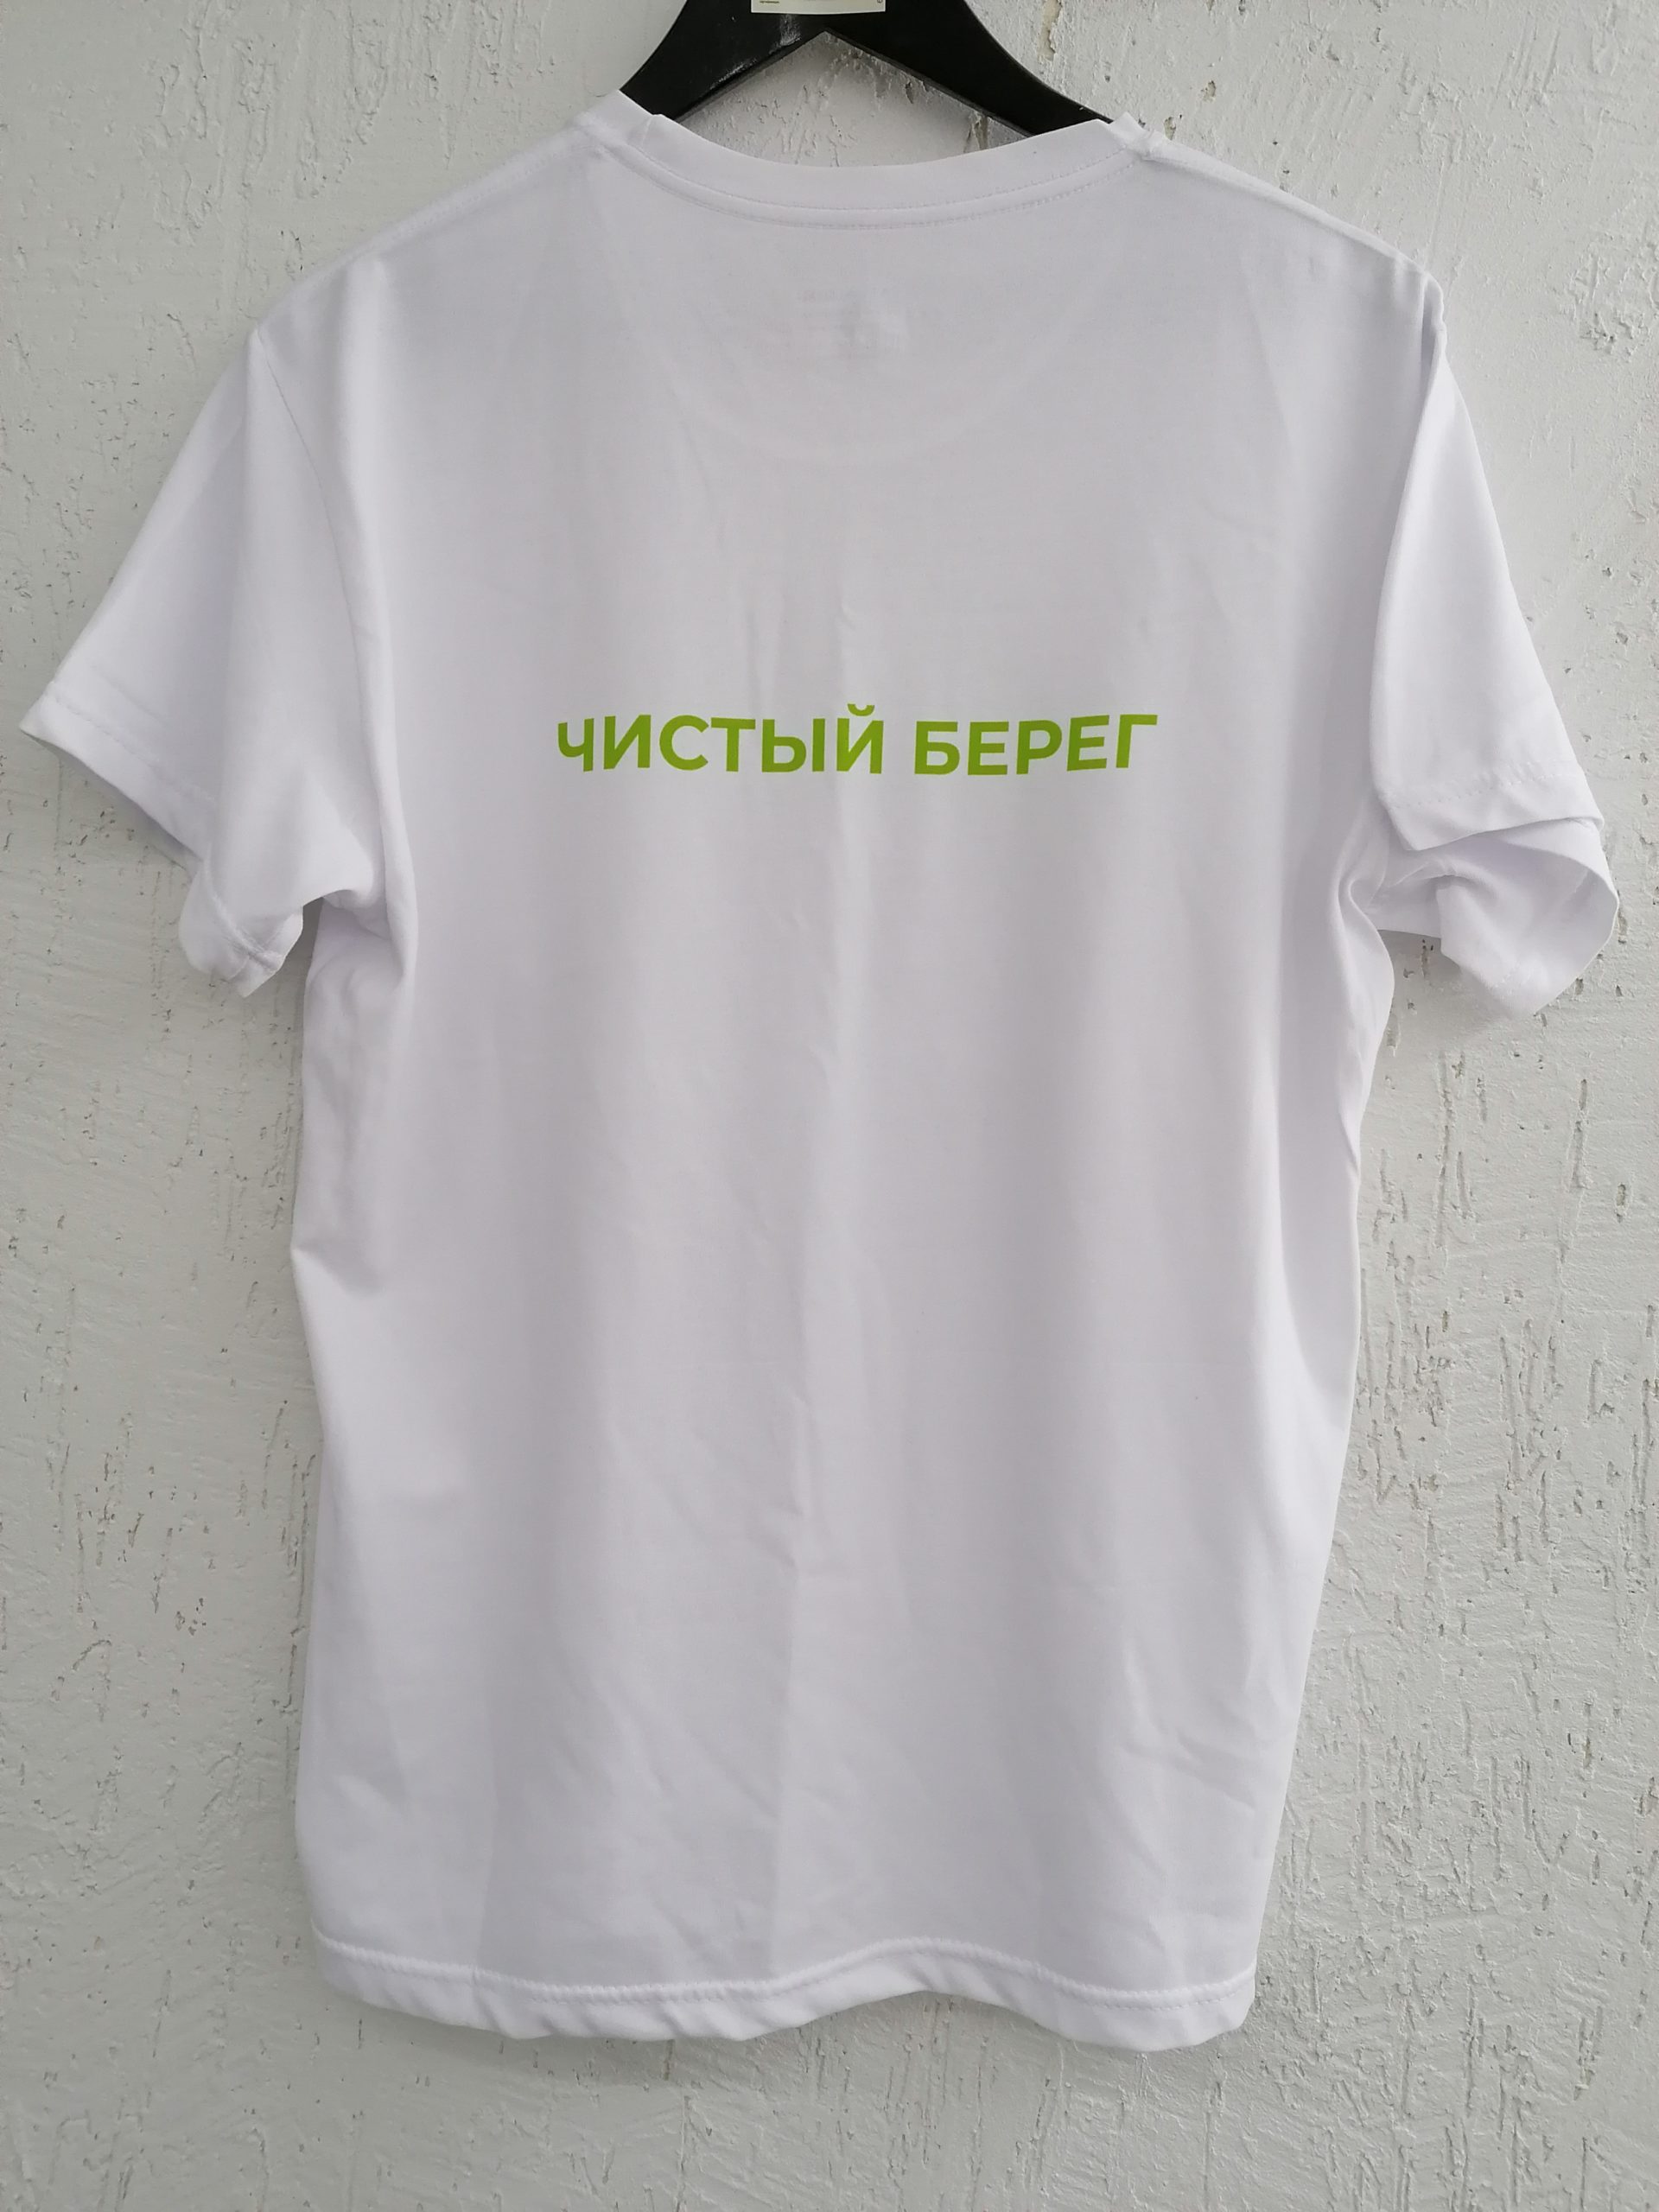 белая хлопковая футболка с салатовой надписью "Чистый берег"